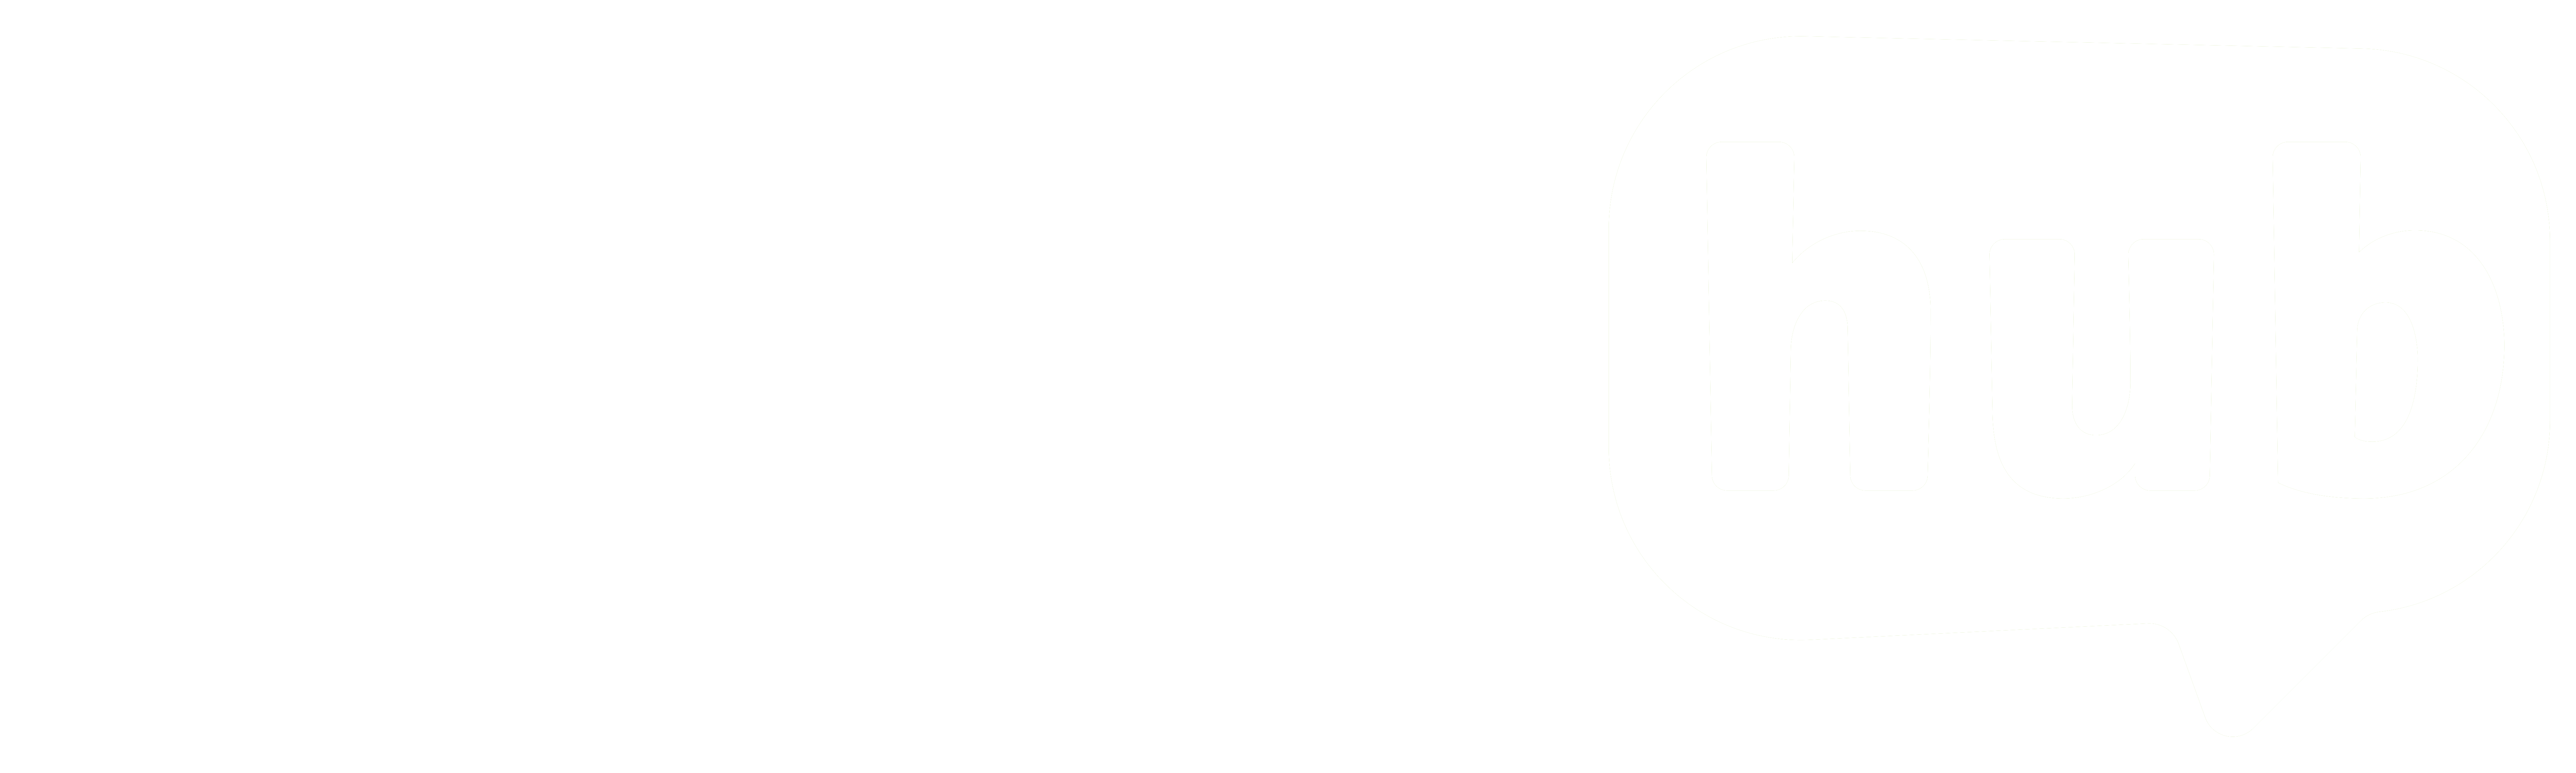 fluency hub logo